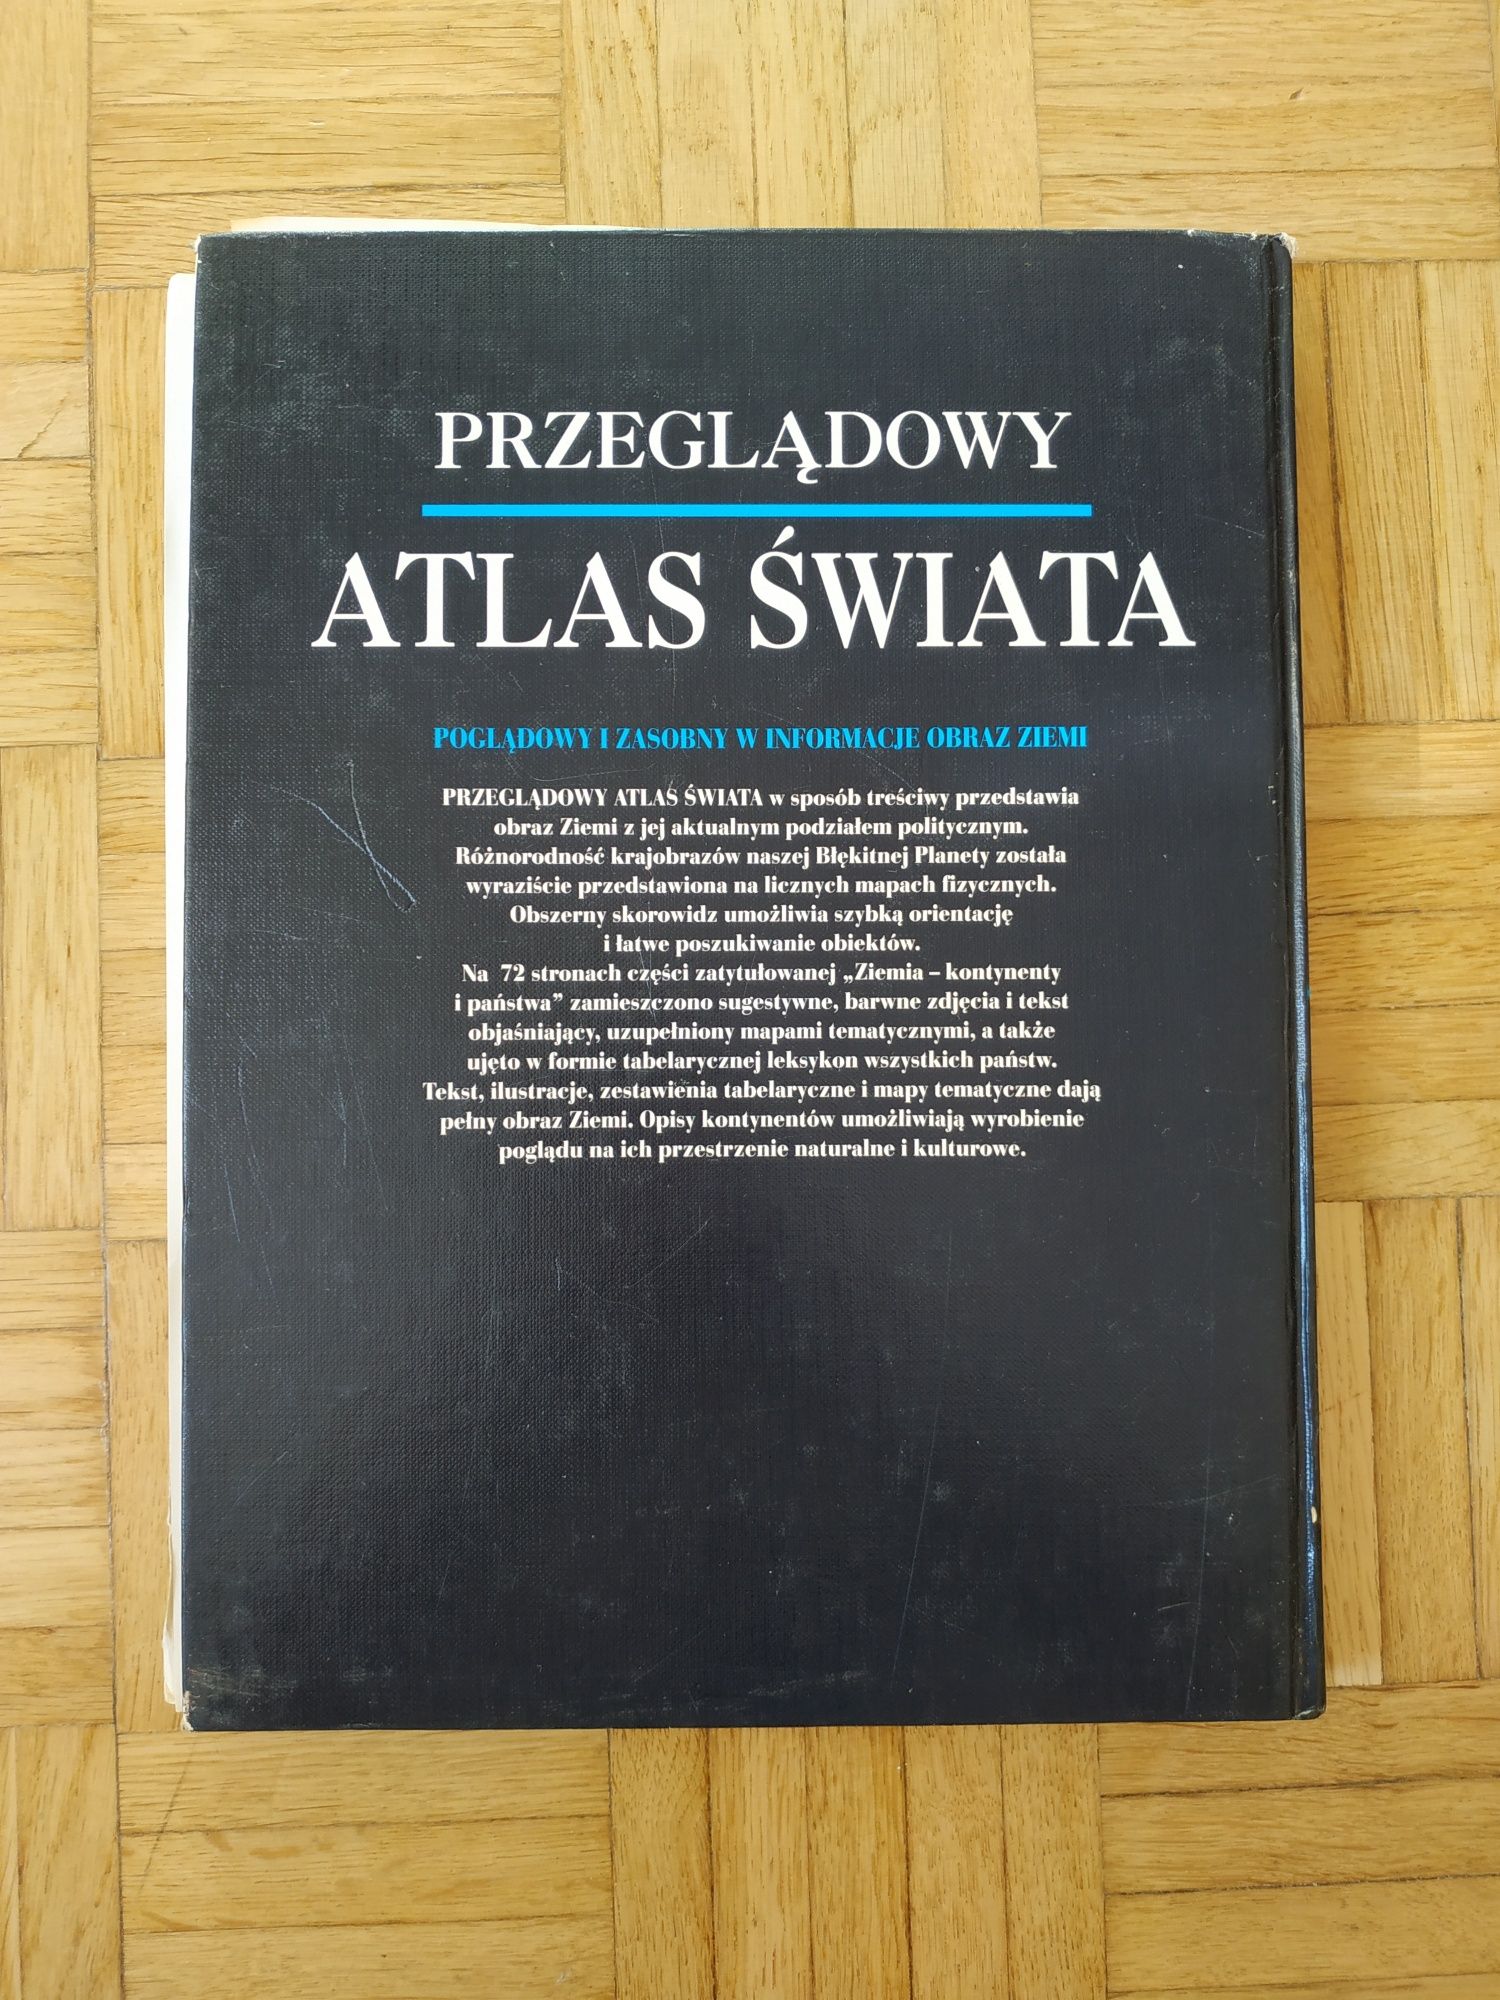 Przeglądowy atlas świata, mapy, książka Świat Książki